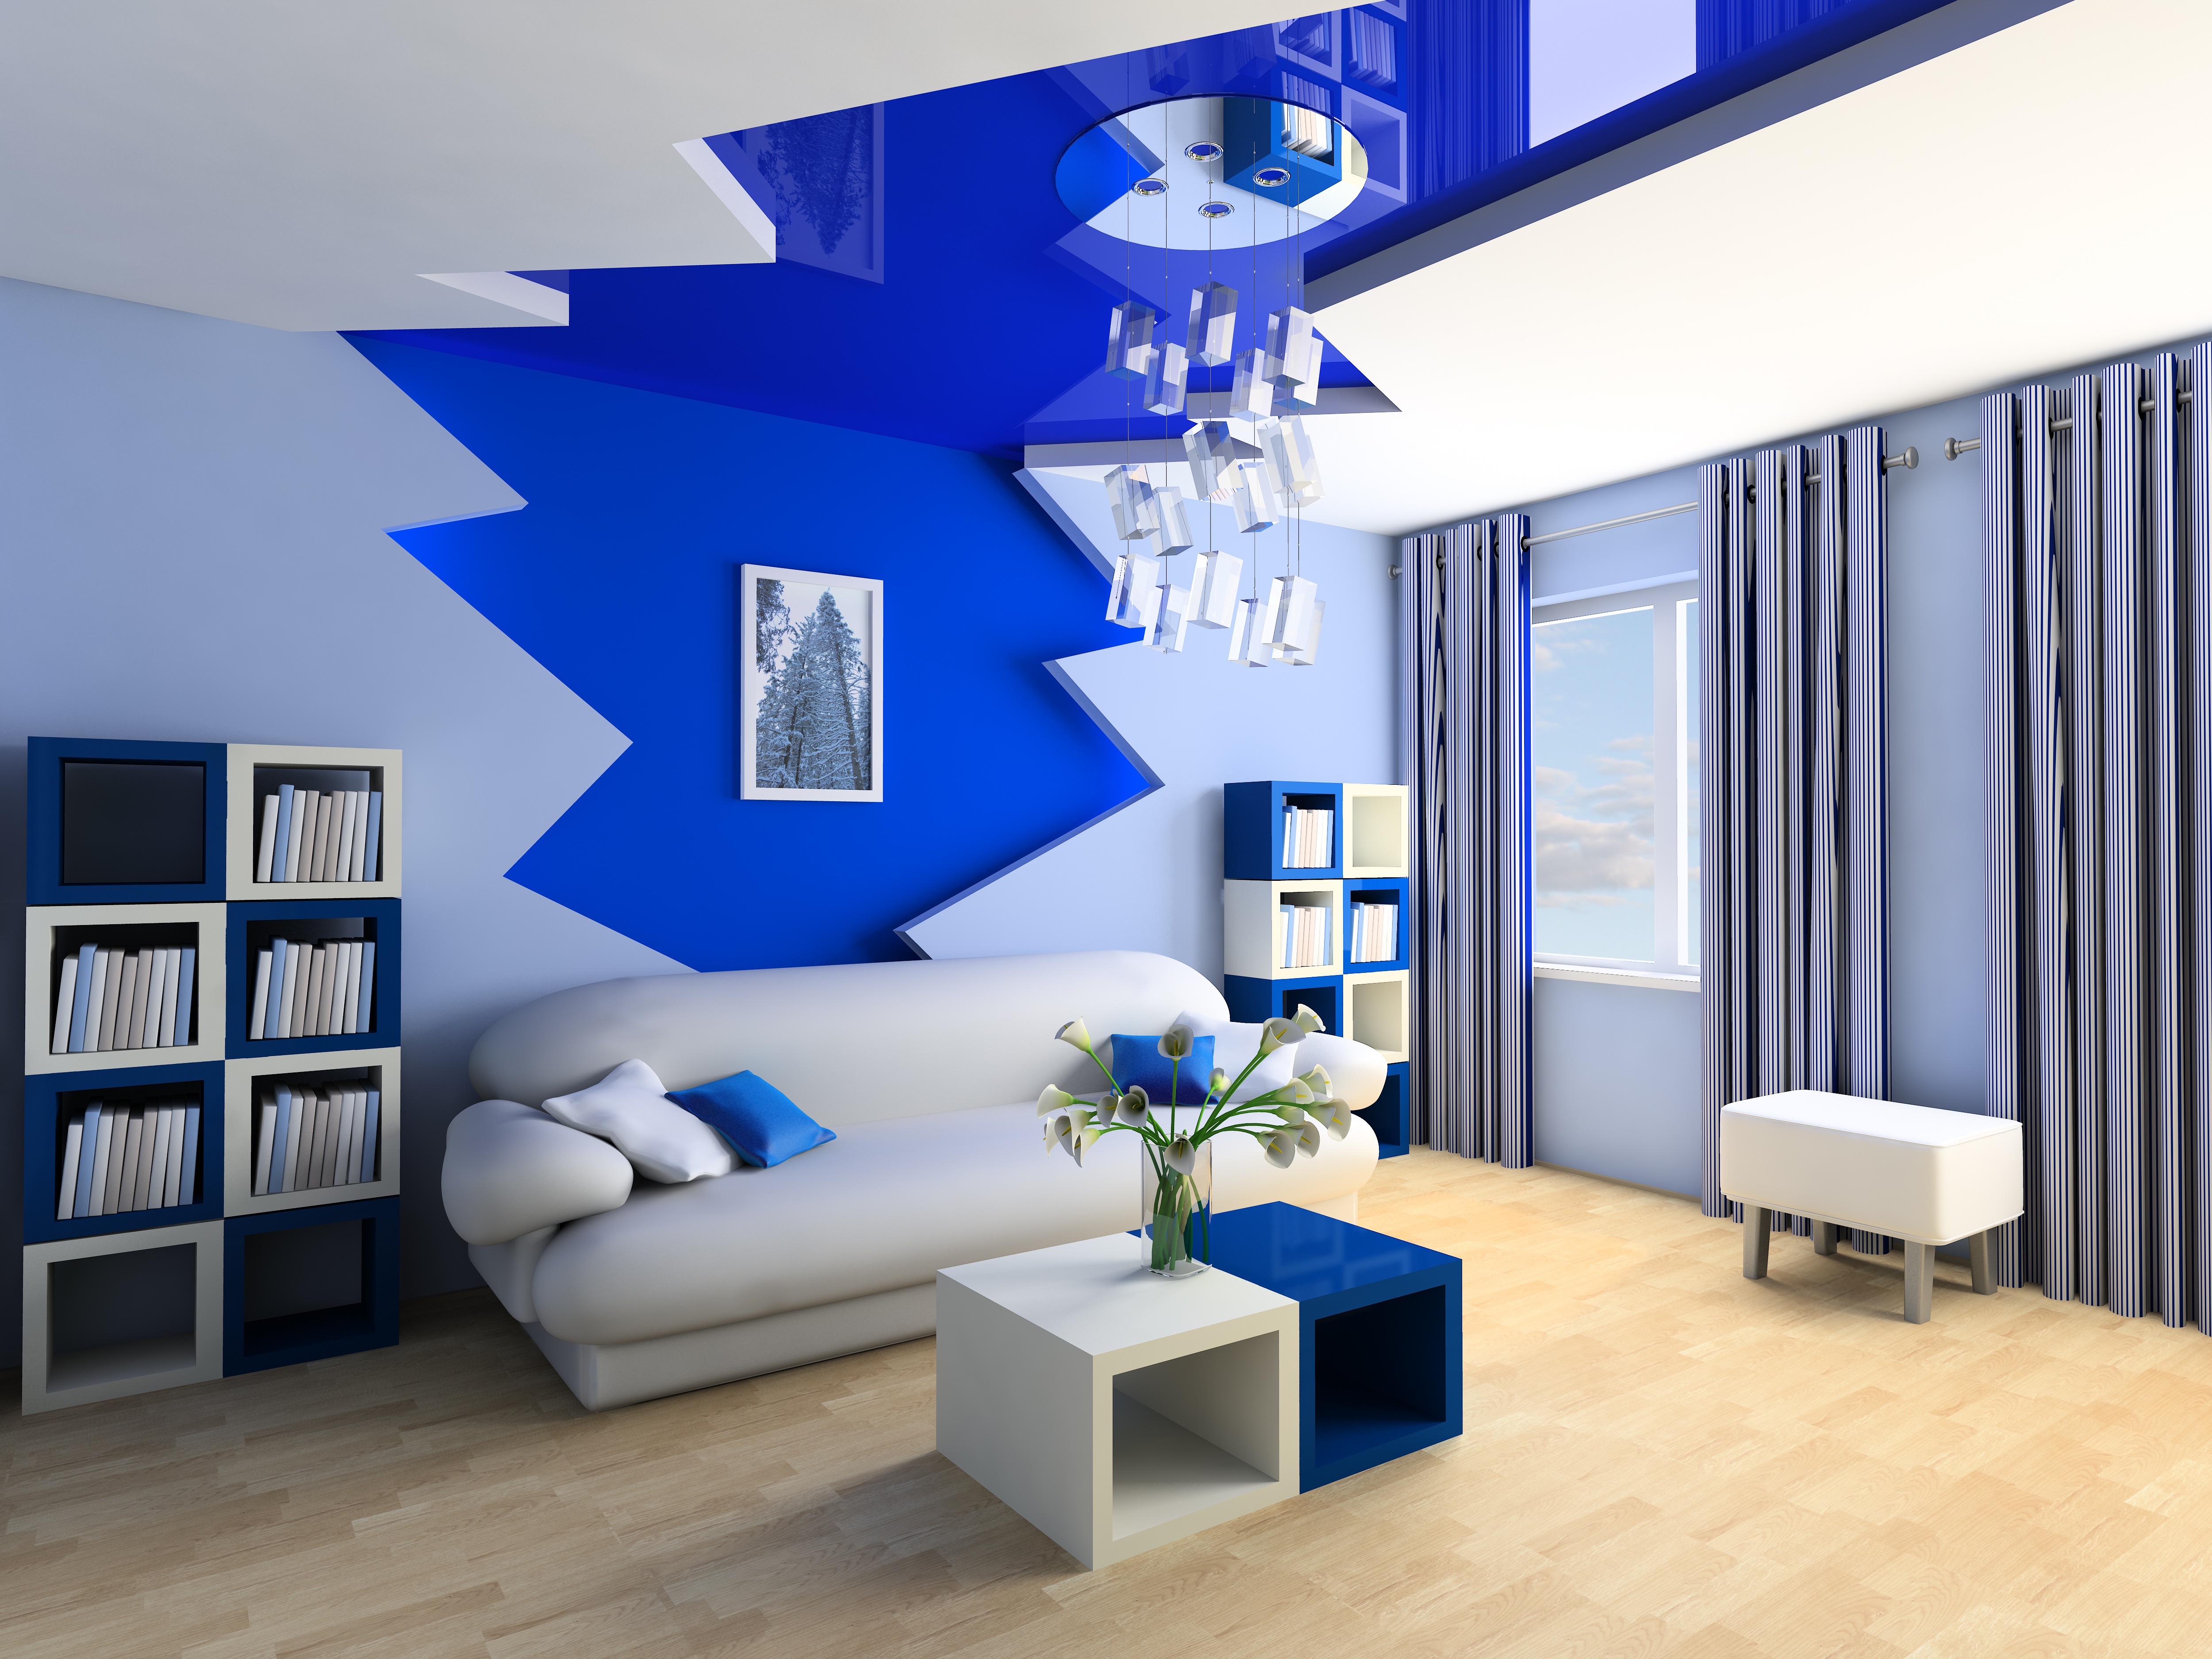 General 5000x3750 blue interior interior design CGI digital art